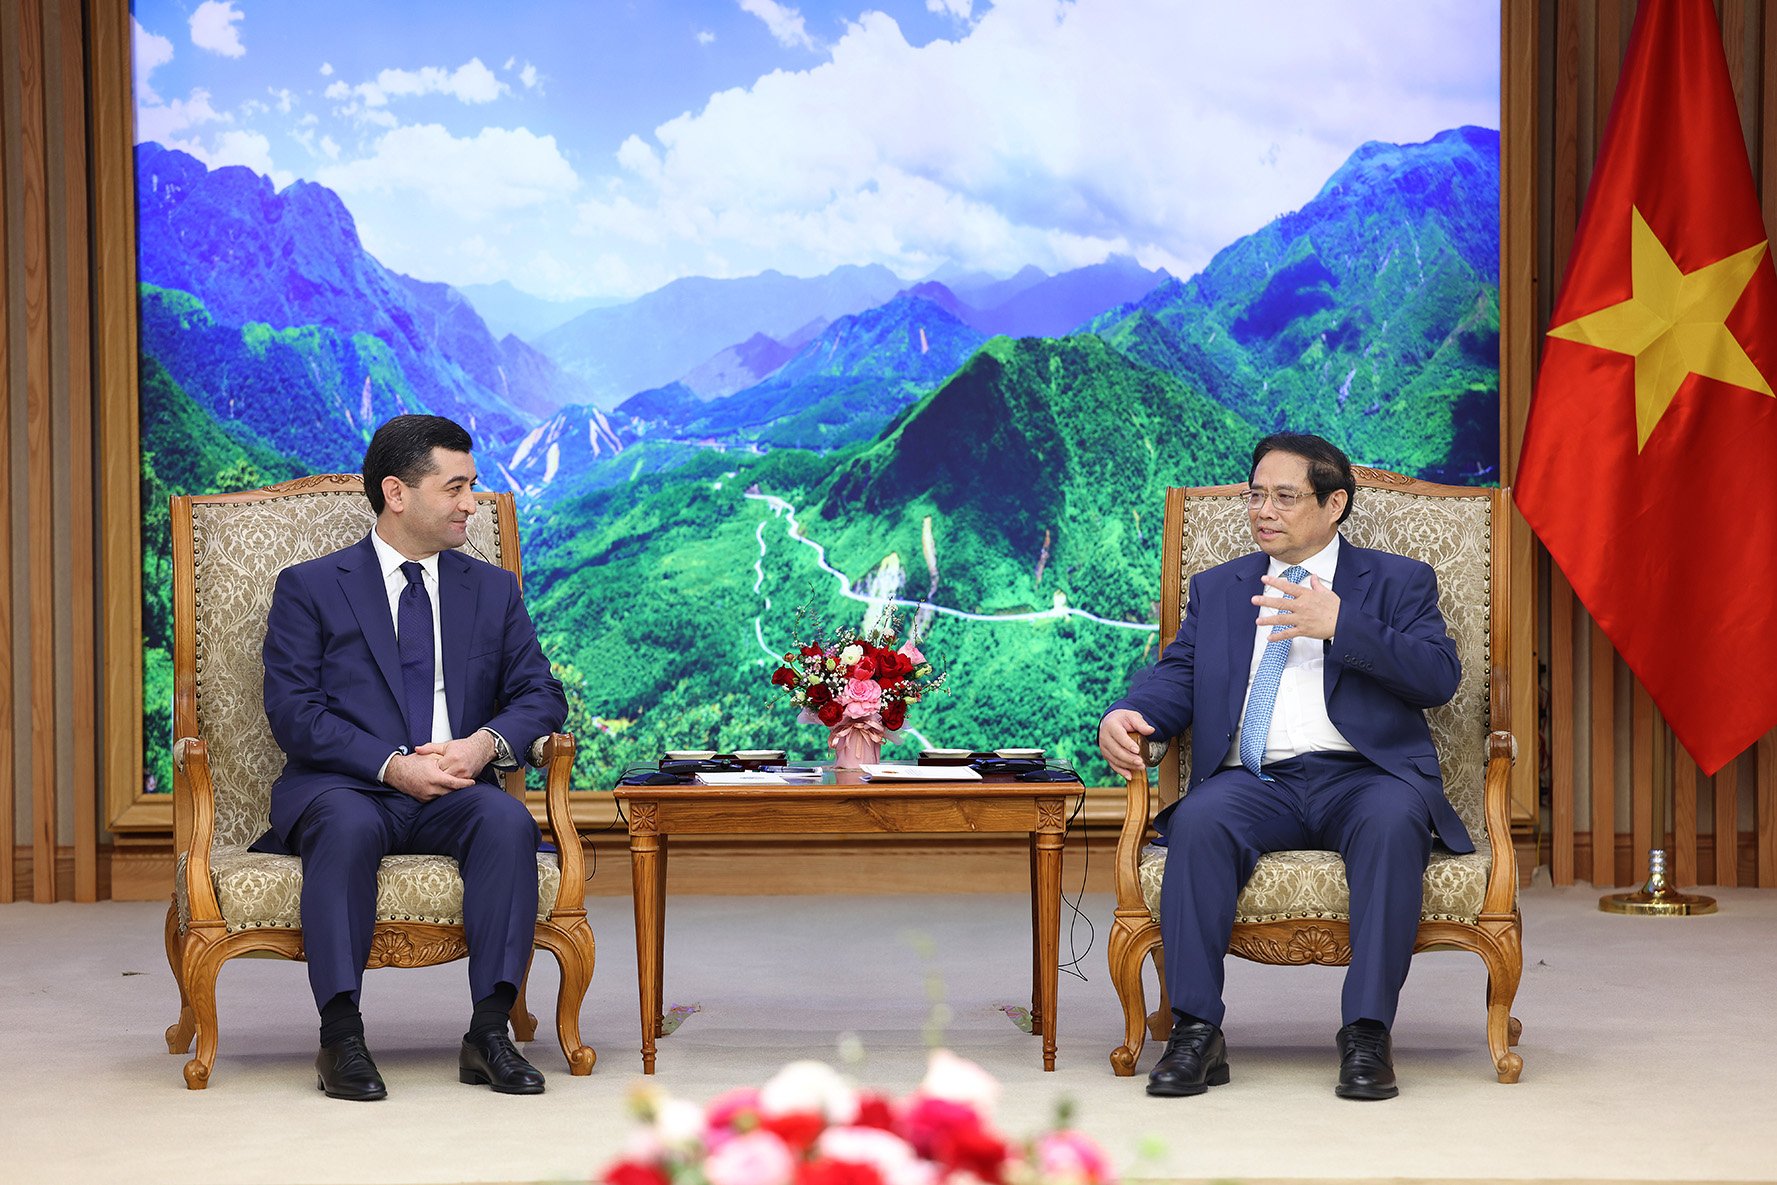 Thủ tướng đề nghị hai nước tăng cường hợp tác trong các ngành công nghiệp mũi nhọn như dầu khí, nông nghiệp để bảo đảm an ninh năng lượng và an ninh lương thực - Ảnh: VGP/Nhật Bắc